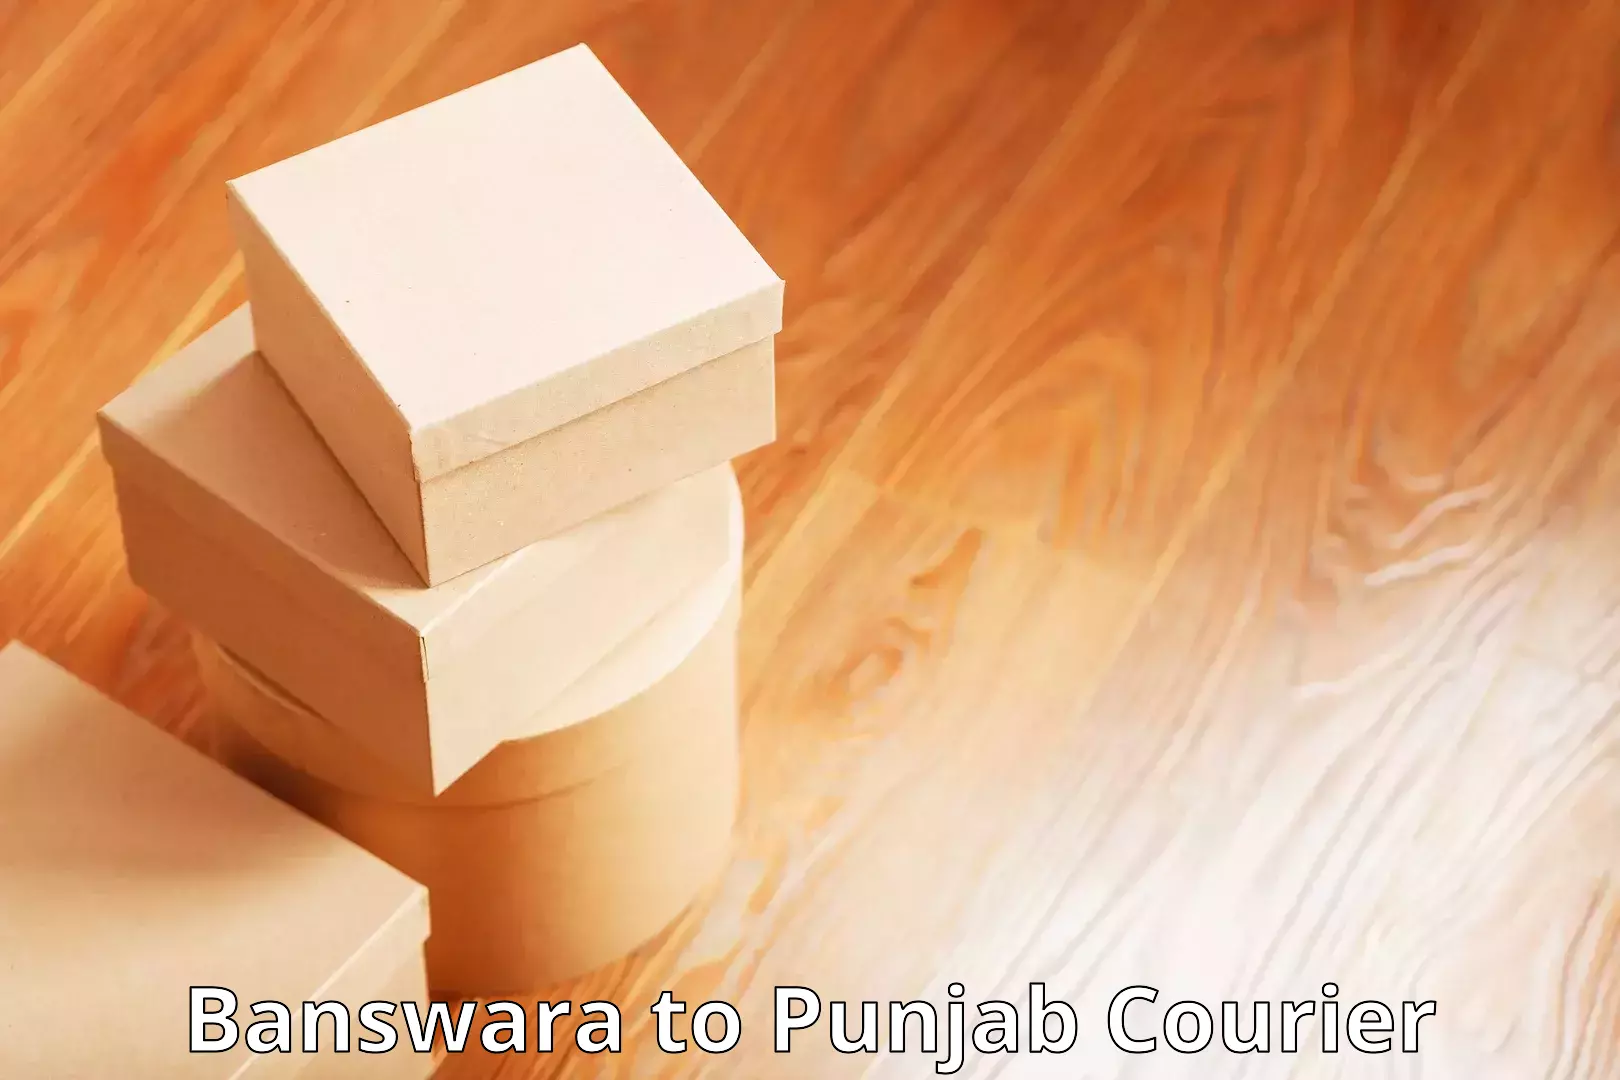 High-capacity parcel service Banswara to Amritsar